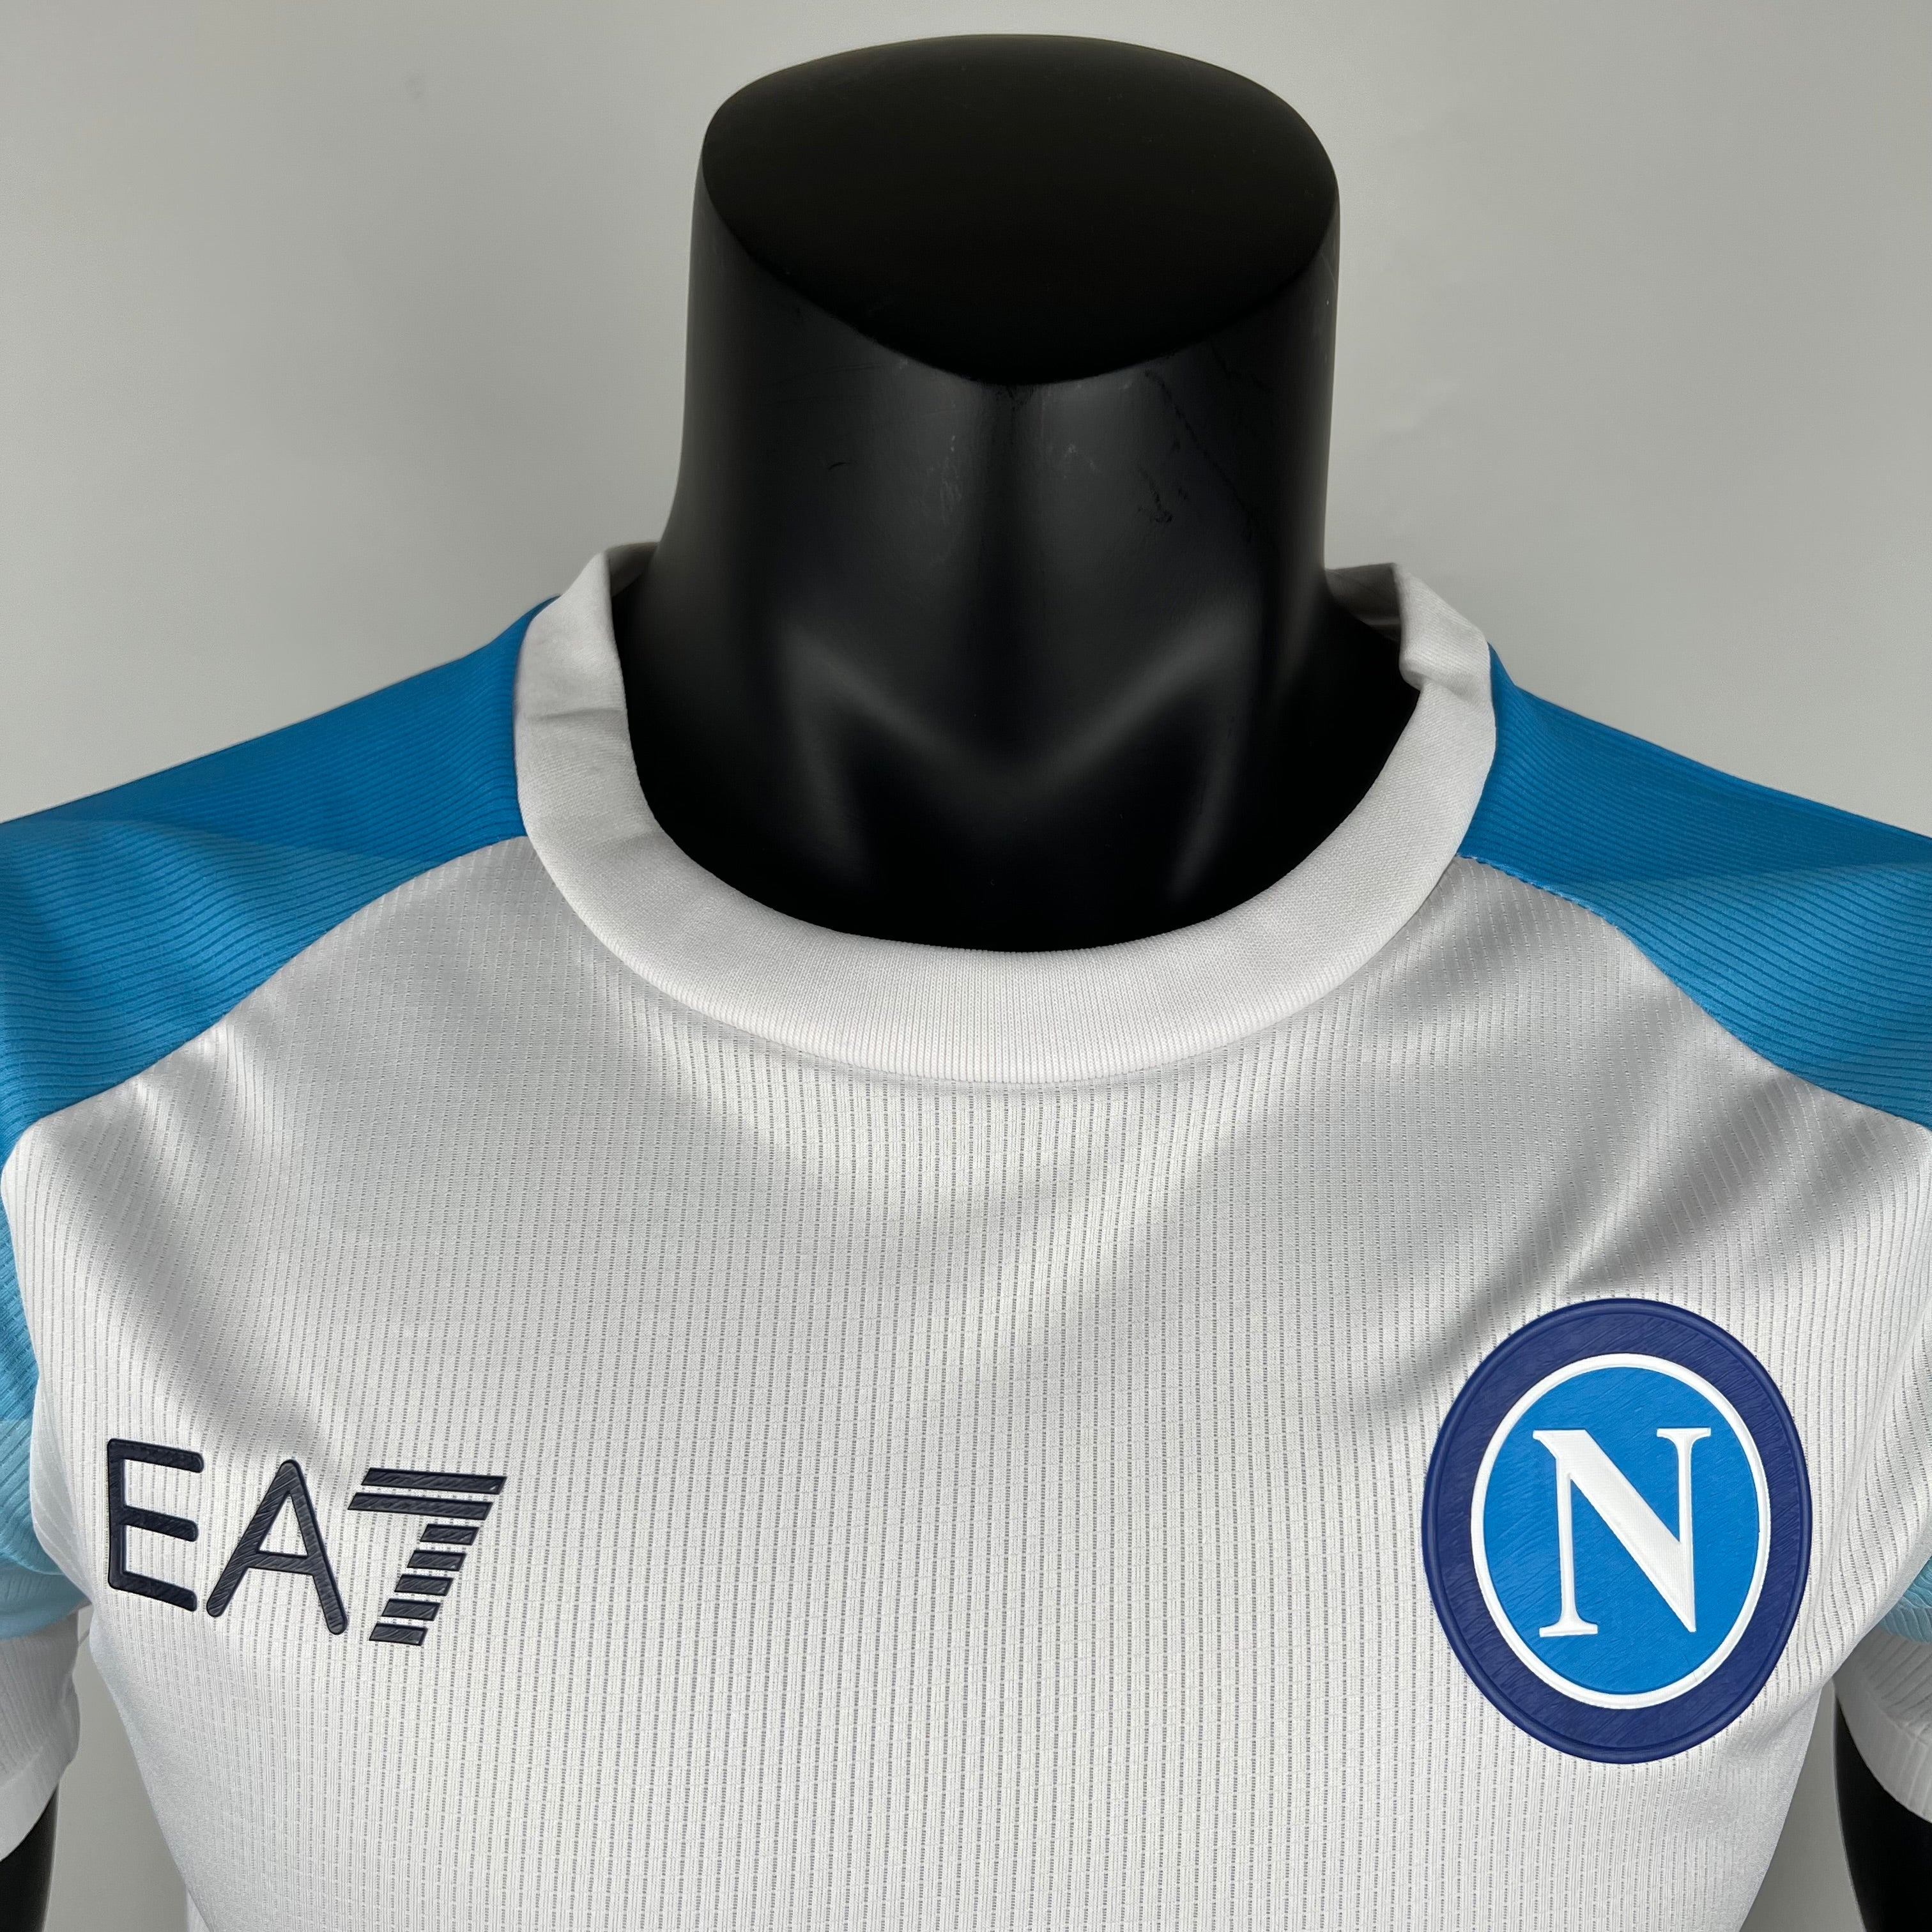 Napoli Face-Game Lozano - 23/24 Player Version